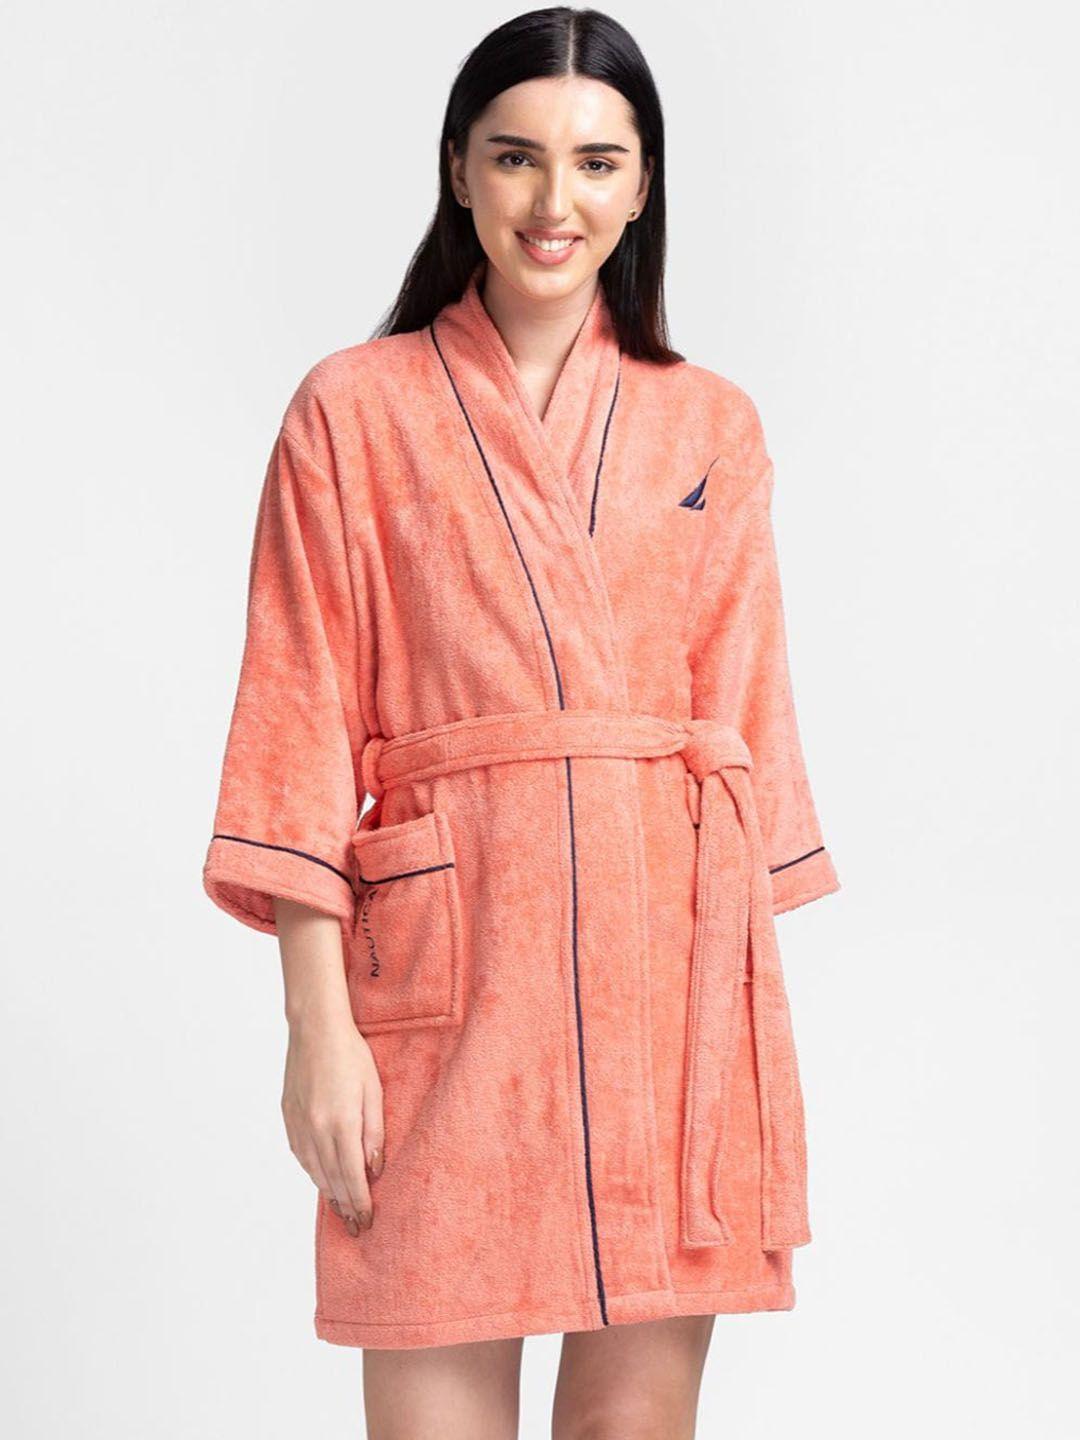 nautica women coral-colored solid pure cotton robe